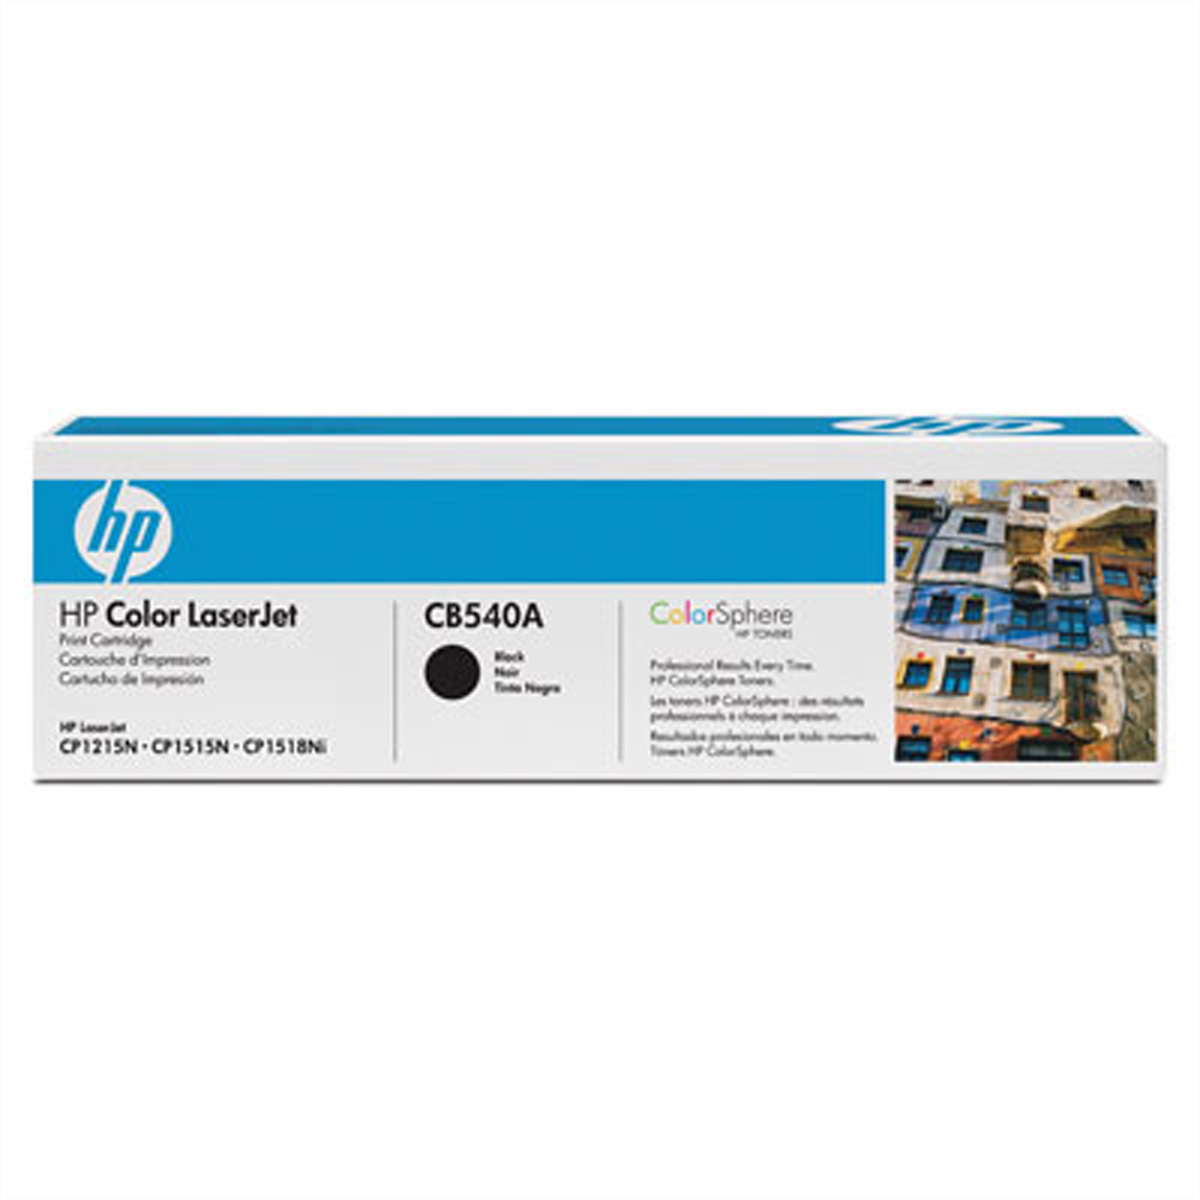 CB540A, HP Color LaserJet Druckkassette schwarz für HP LaserJet CP1215